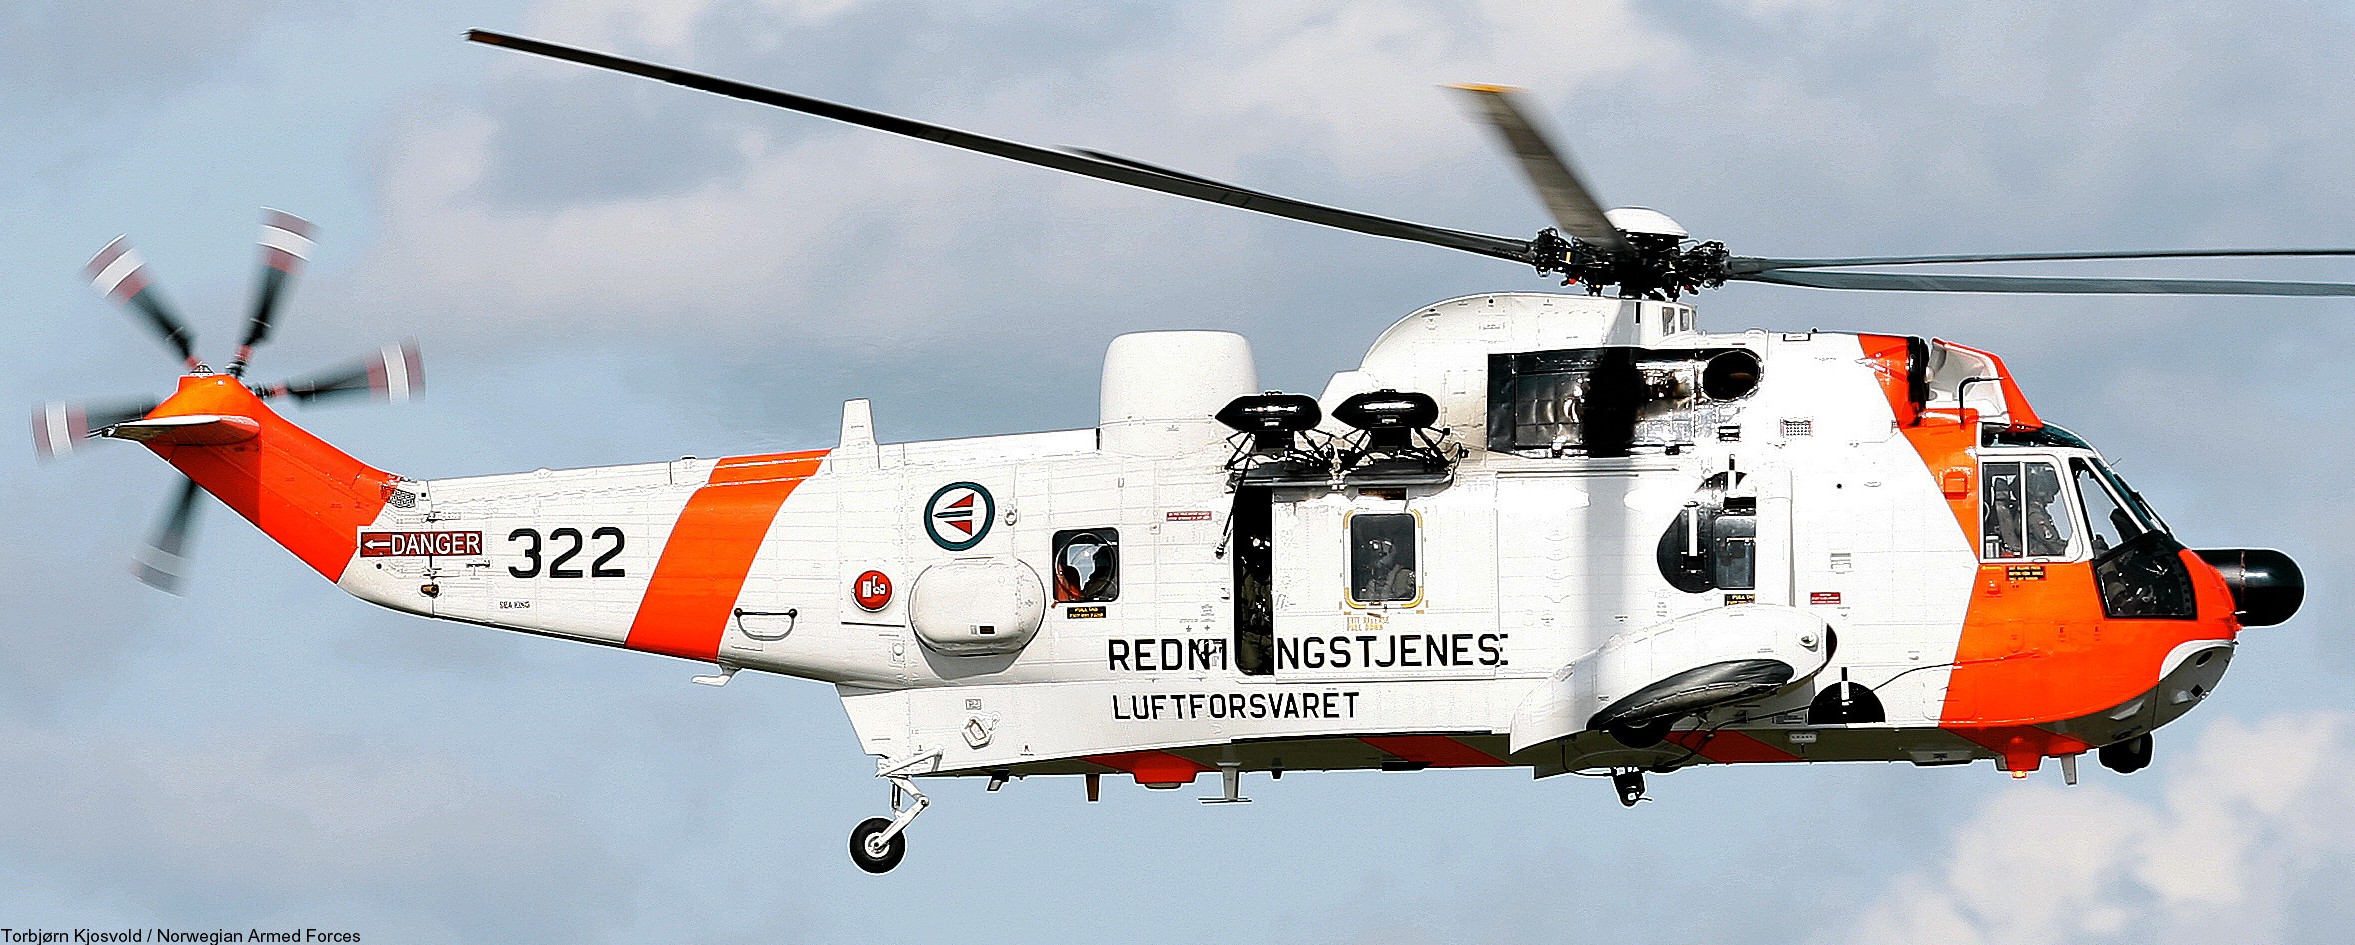 westland ws-61 sea king royal norwegian air force sar rescue 330 squadron skvadron luftforsvaret 322 05